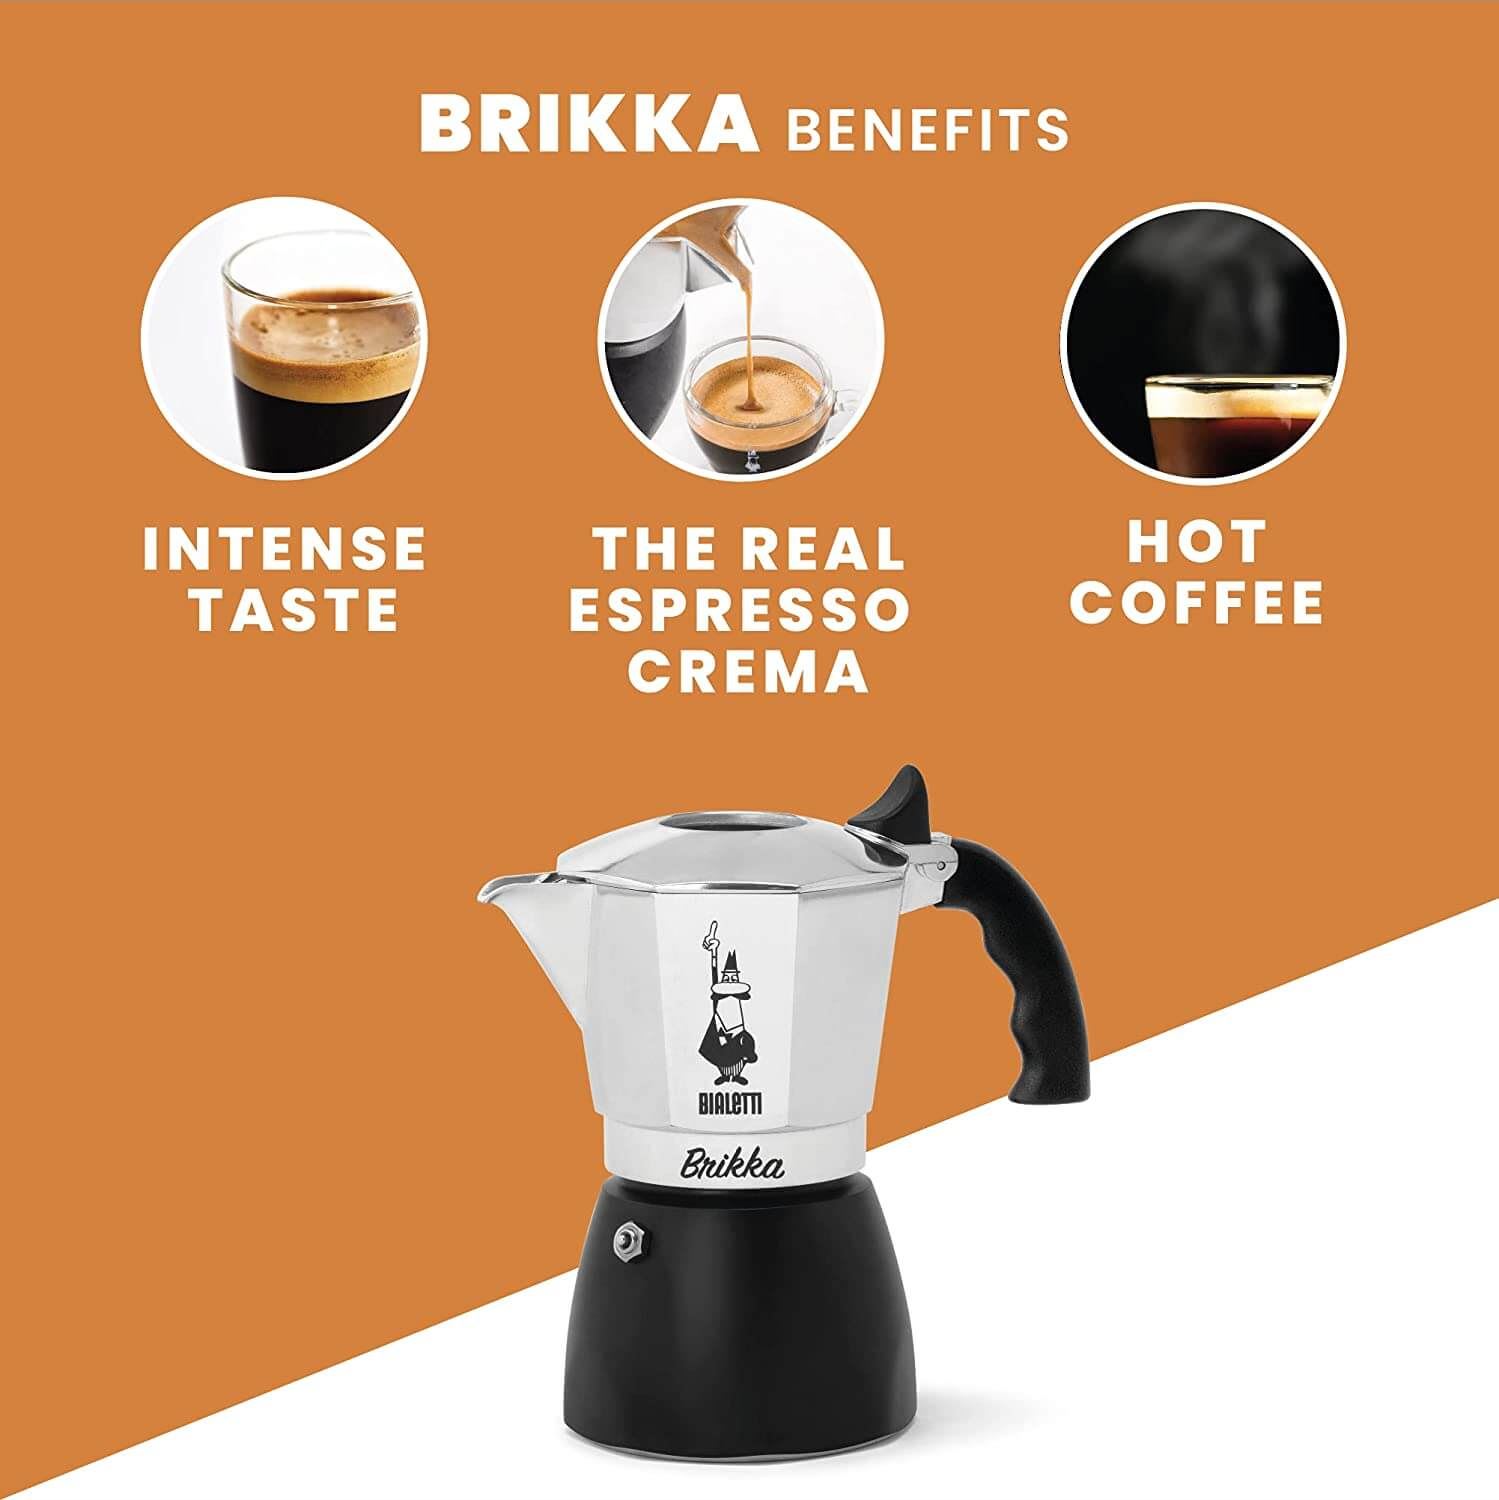 Cafetera Brikka 4 tazas - no inducción